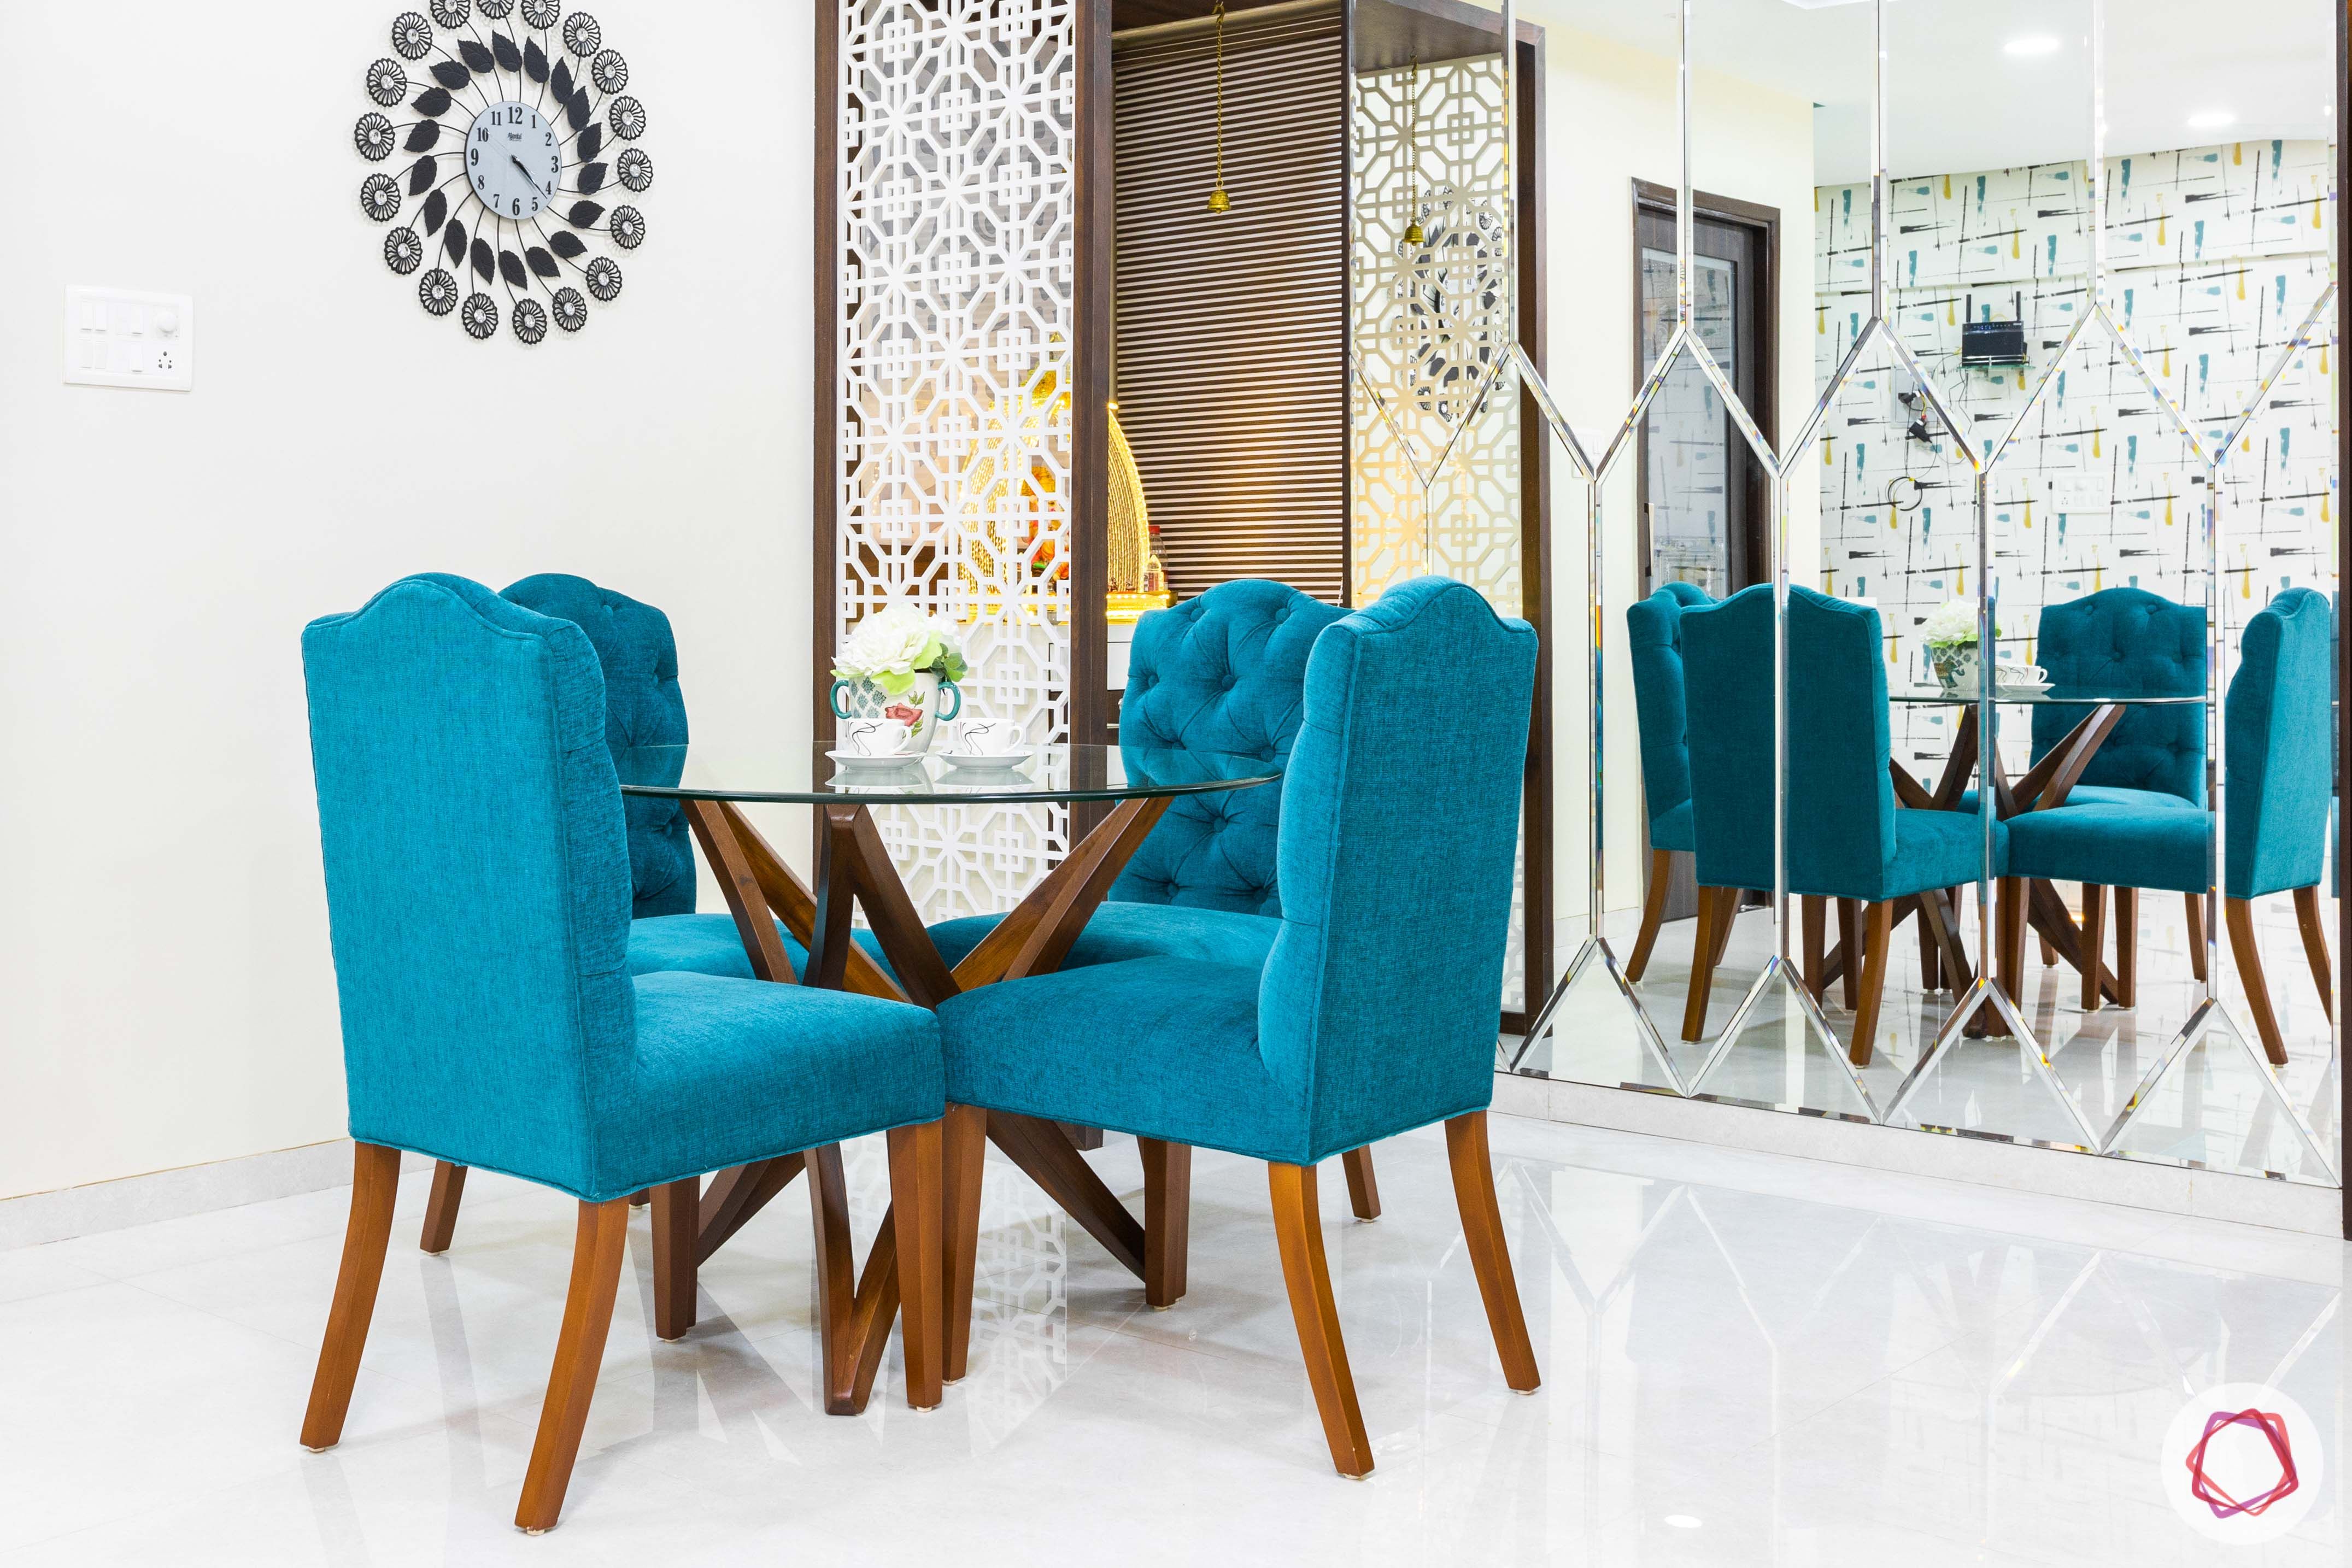 livspace mumbai-3-bhk-in-mumbai-dining room-blue chairs